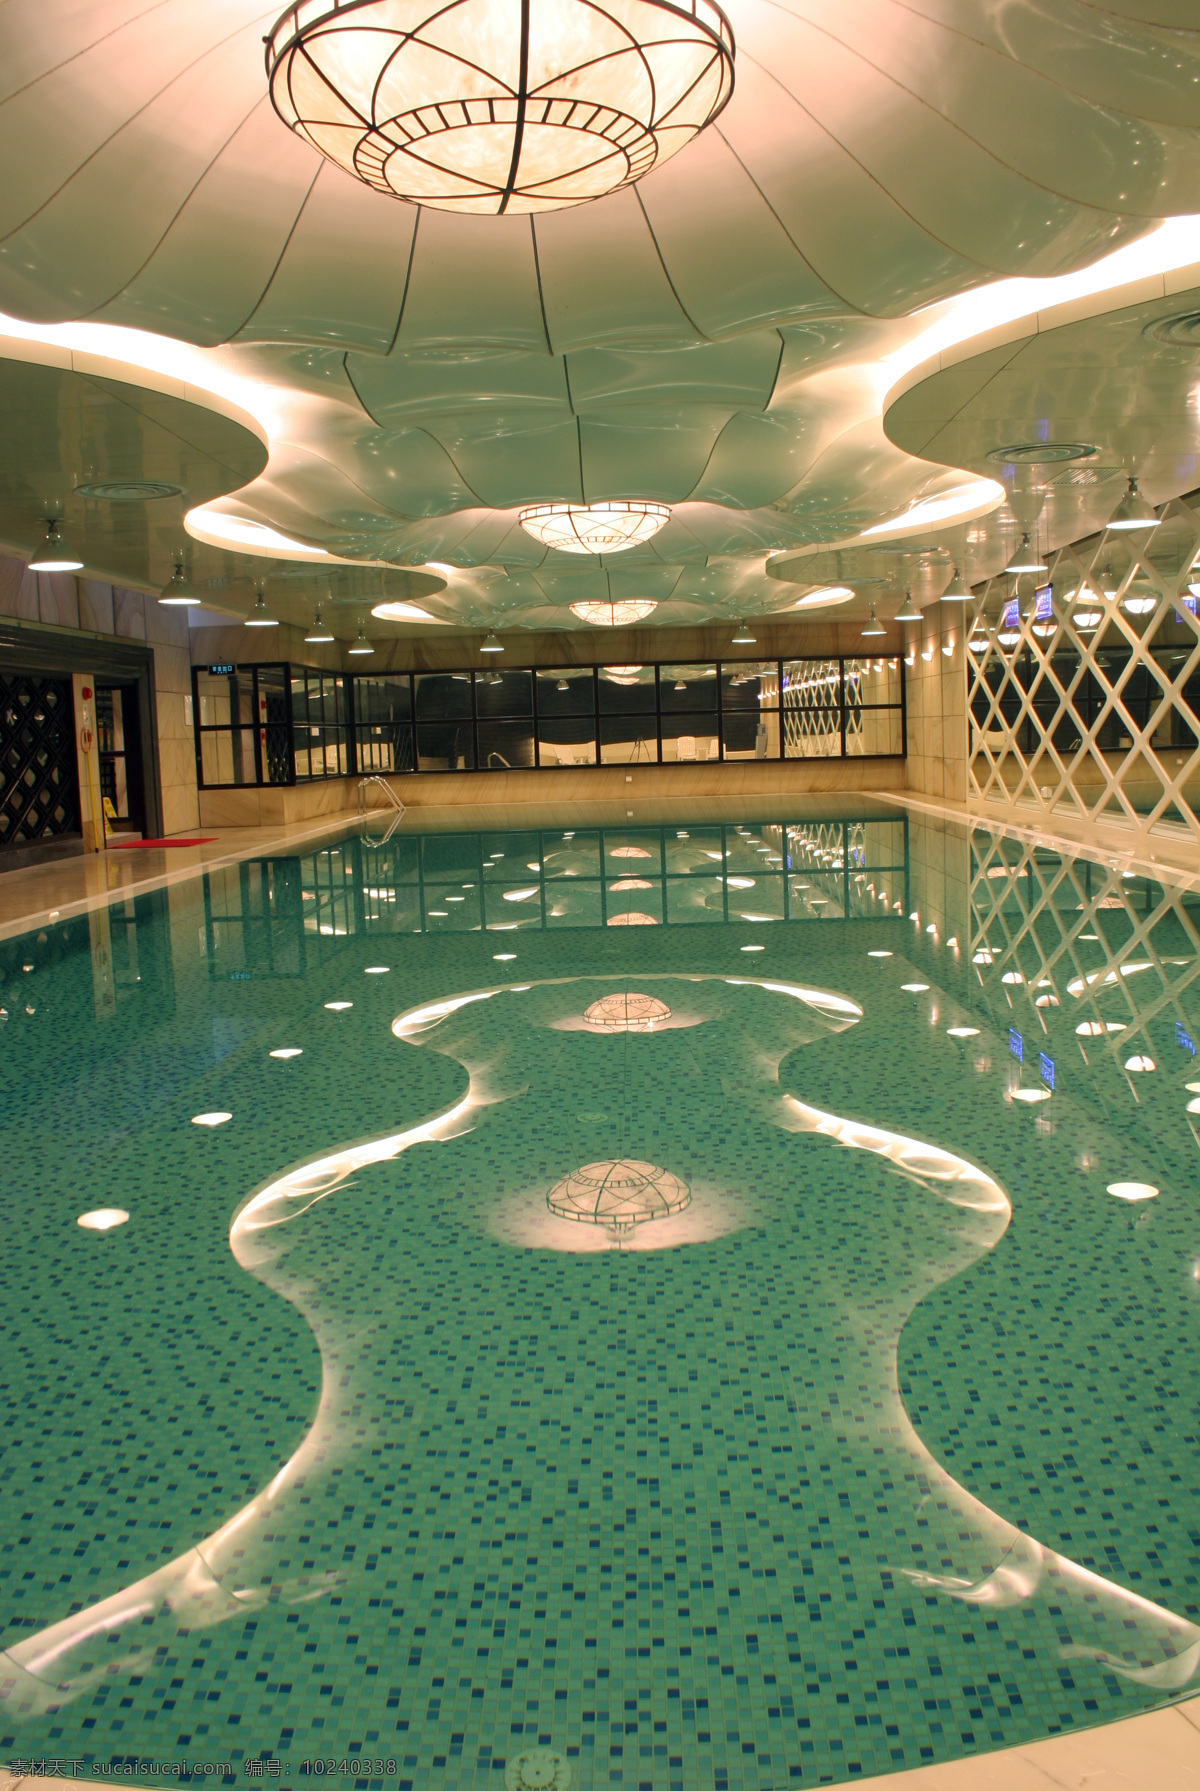 泳池 绿色 波浪 室内 游泳池 平静 水面 室内摄影 建筑园林